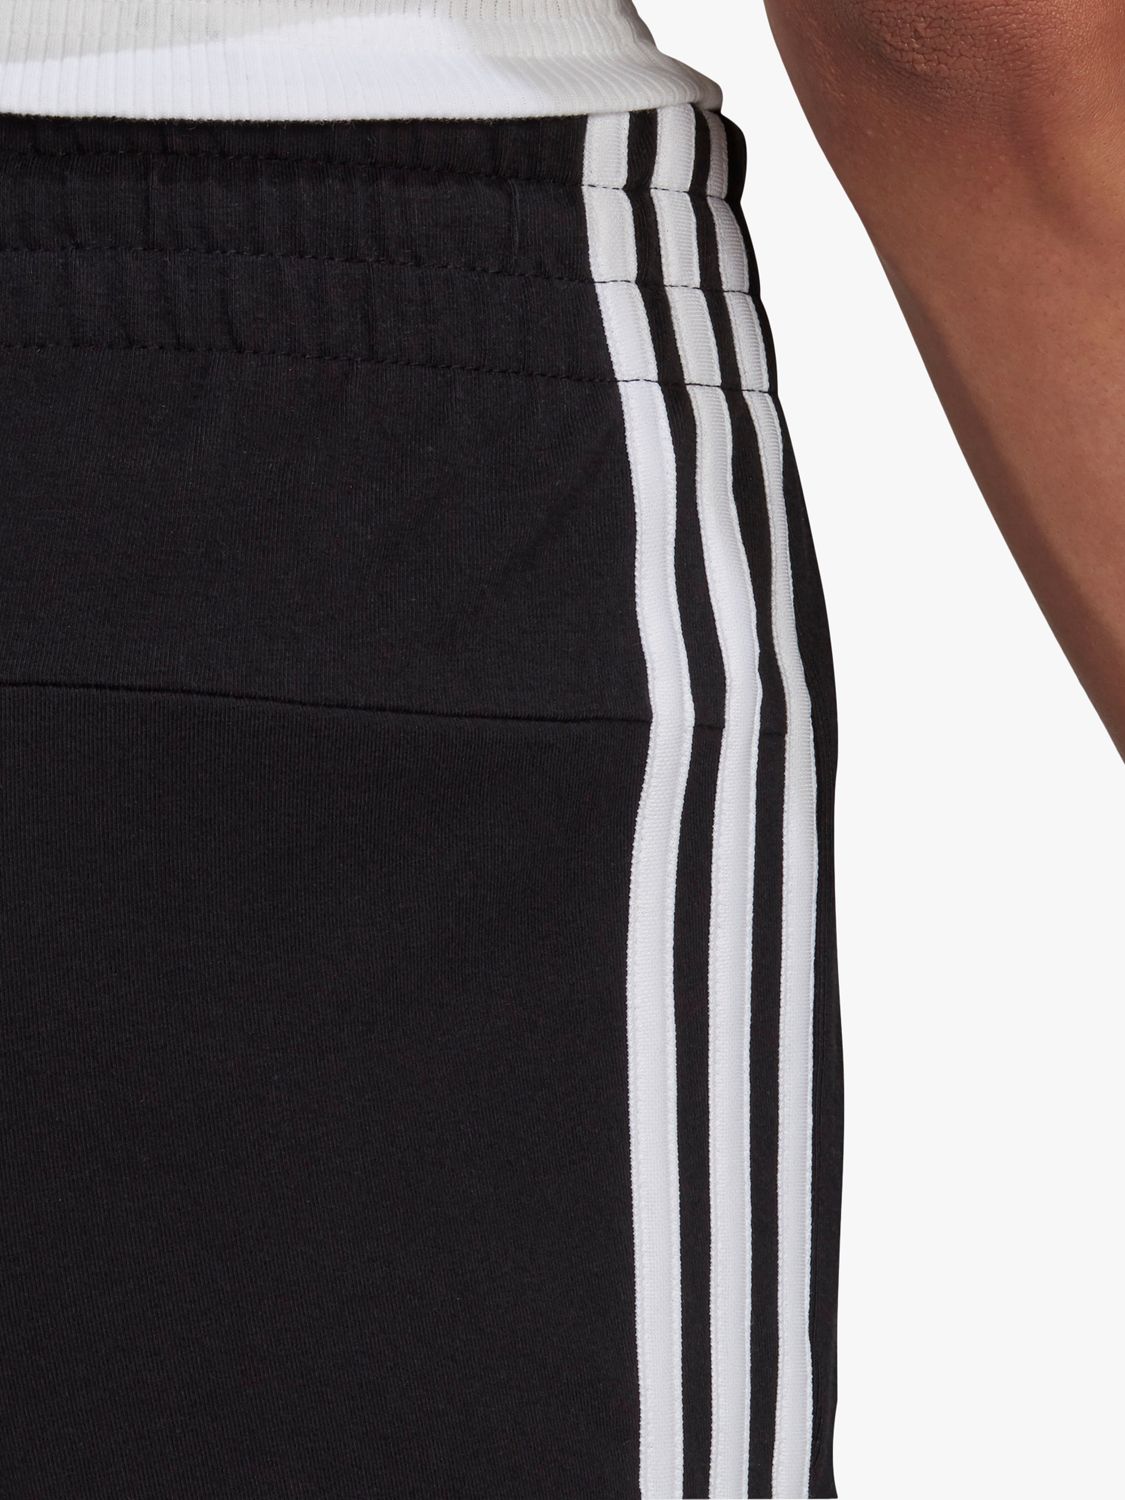 Gym Shorts Black/White